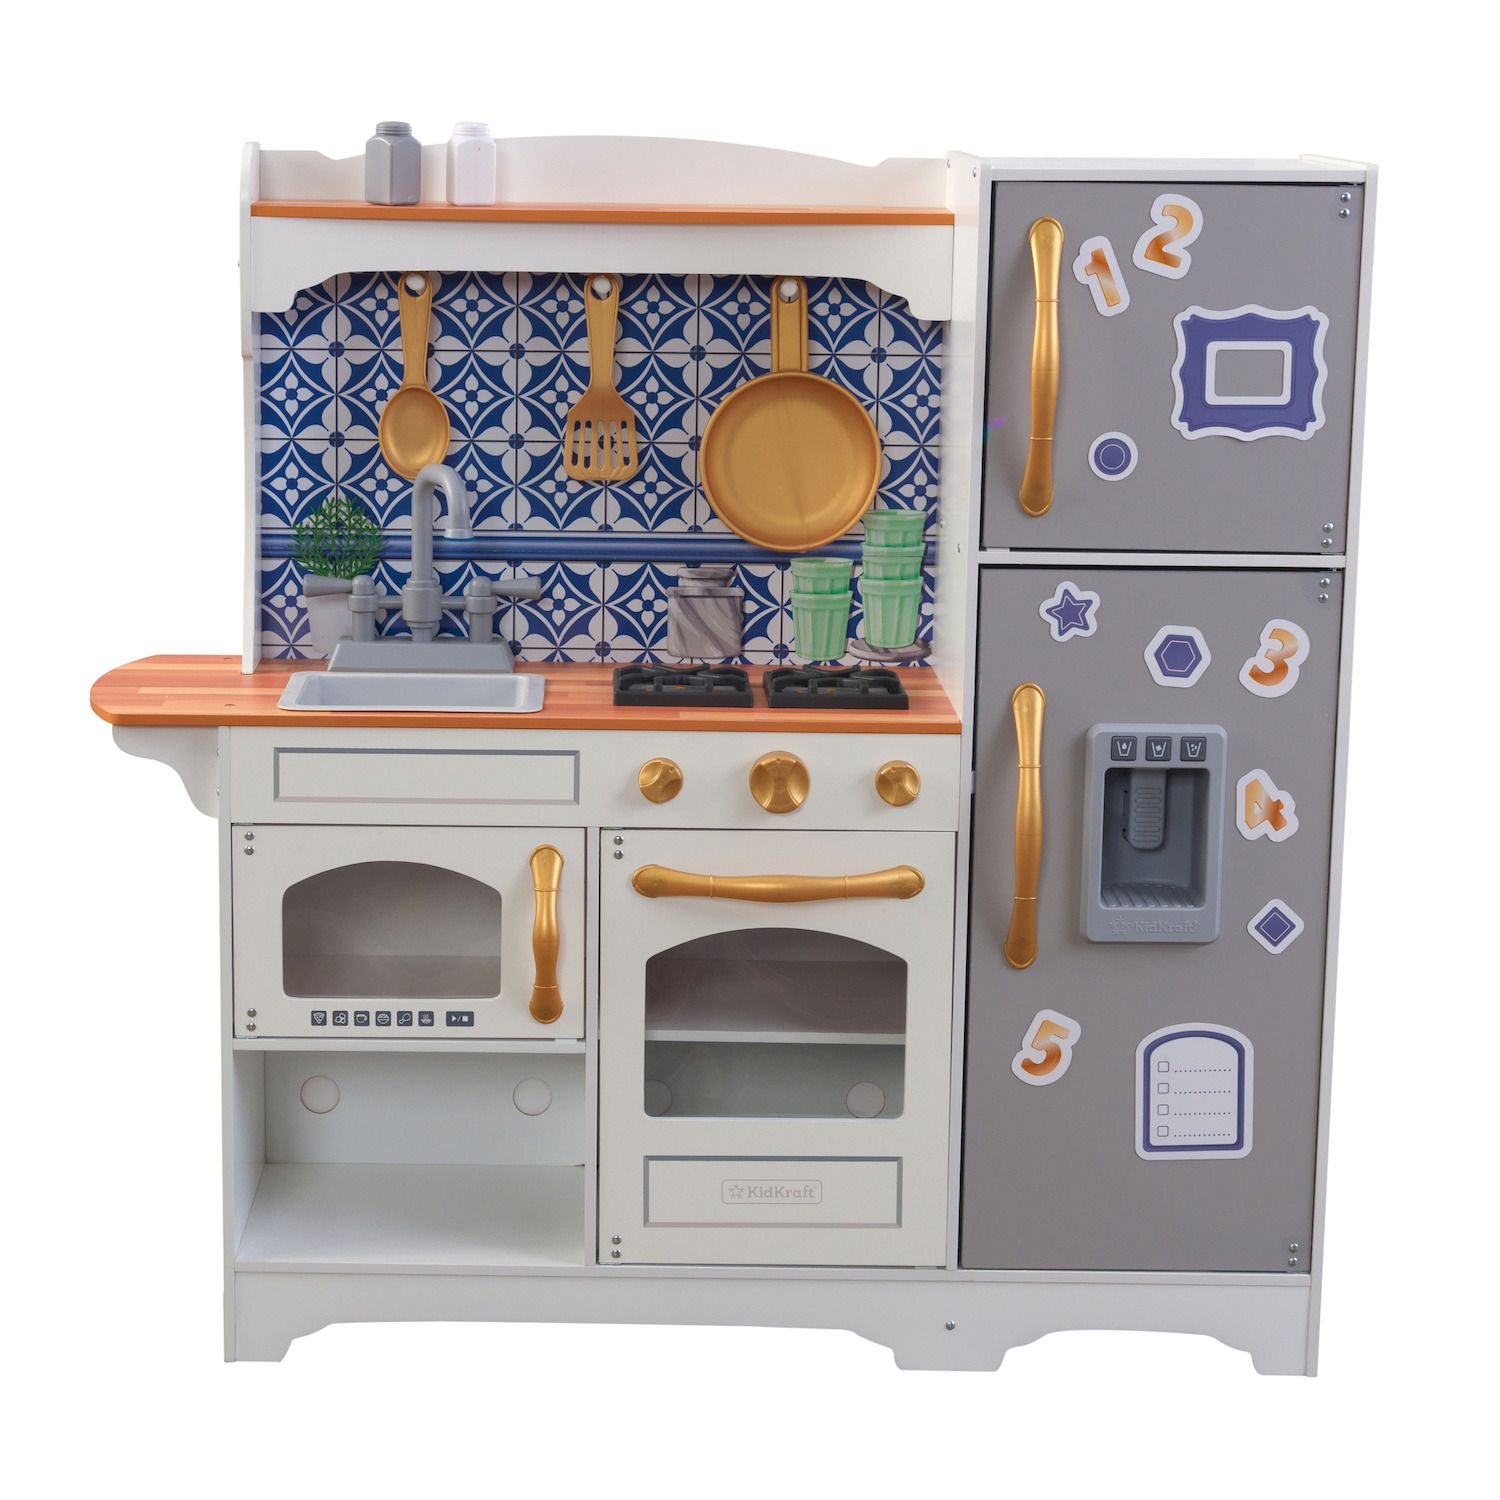 kohls kids kitchen set